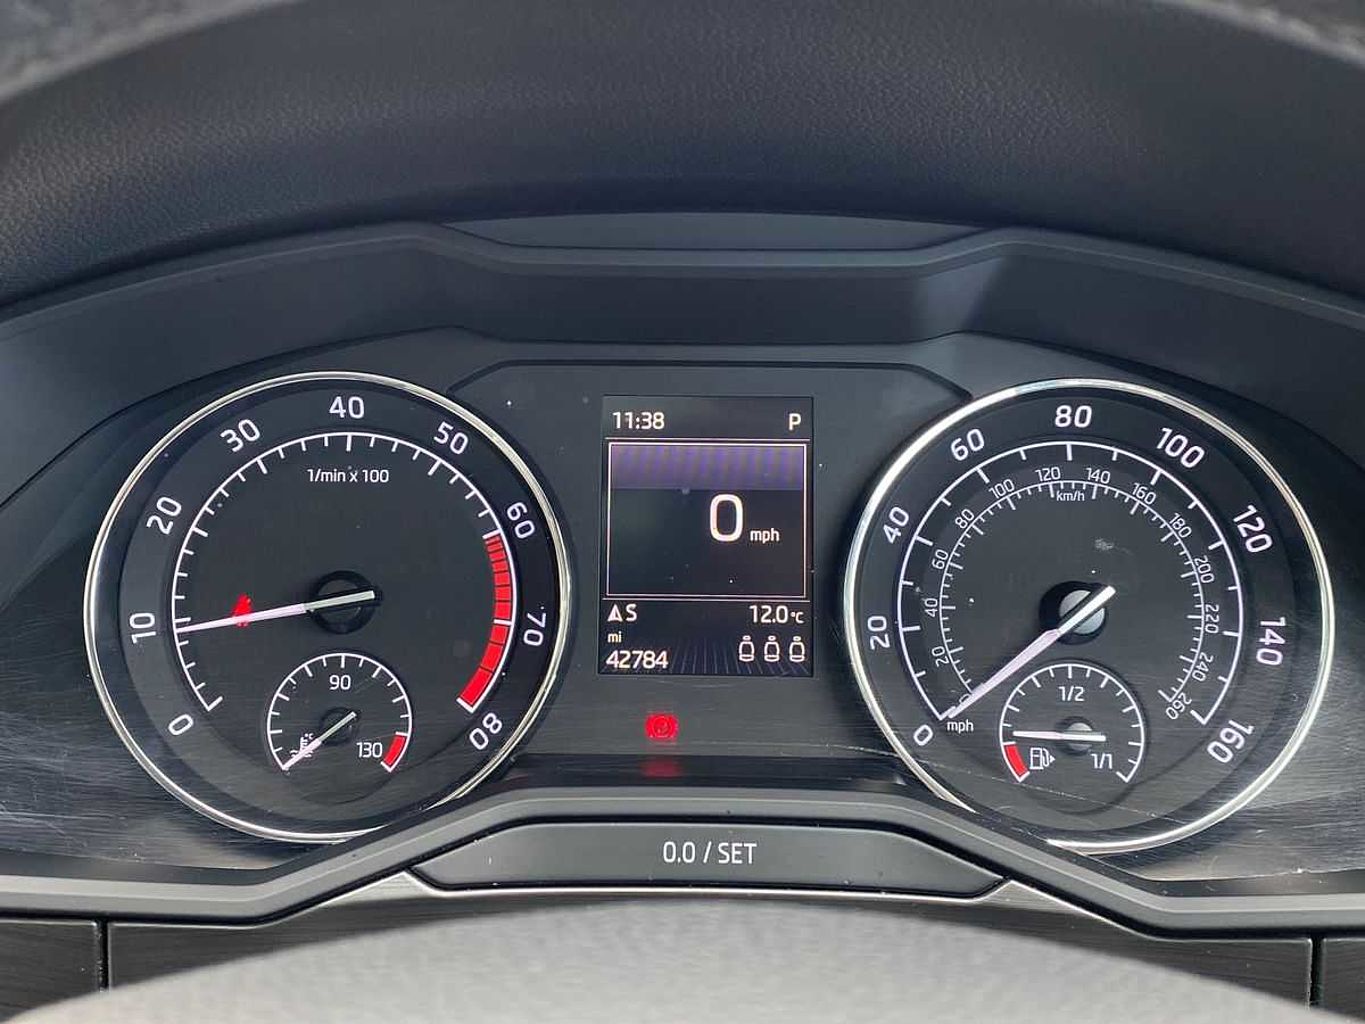 SKODA Superb 2.0 TSI 220ps SE L Executive DSG Hatchback